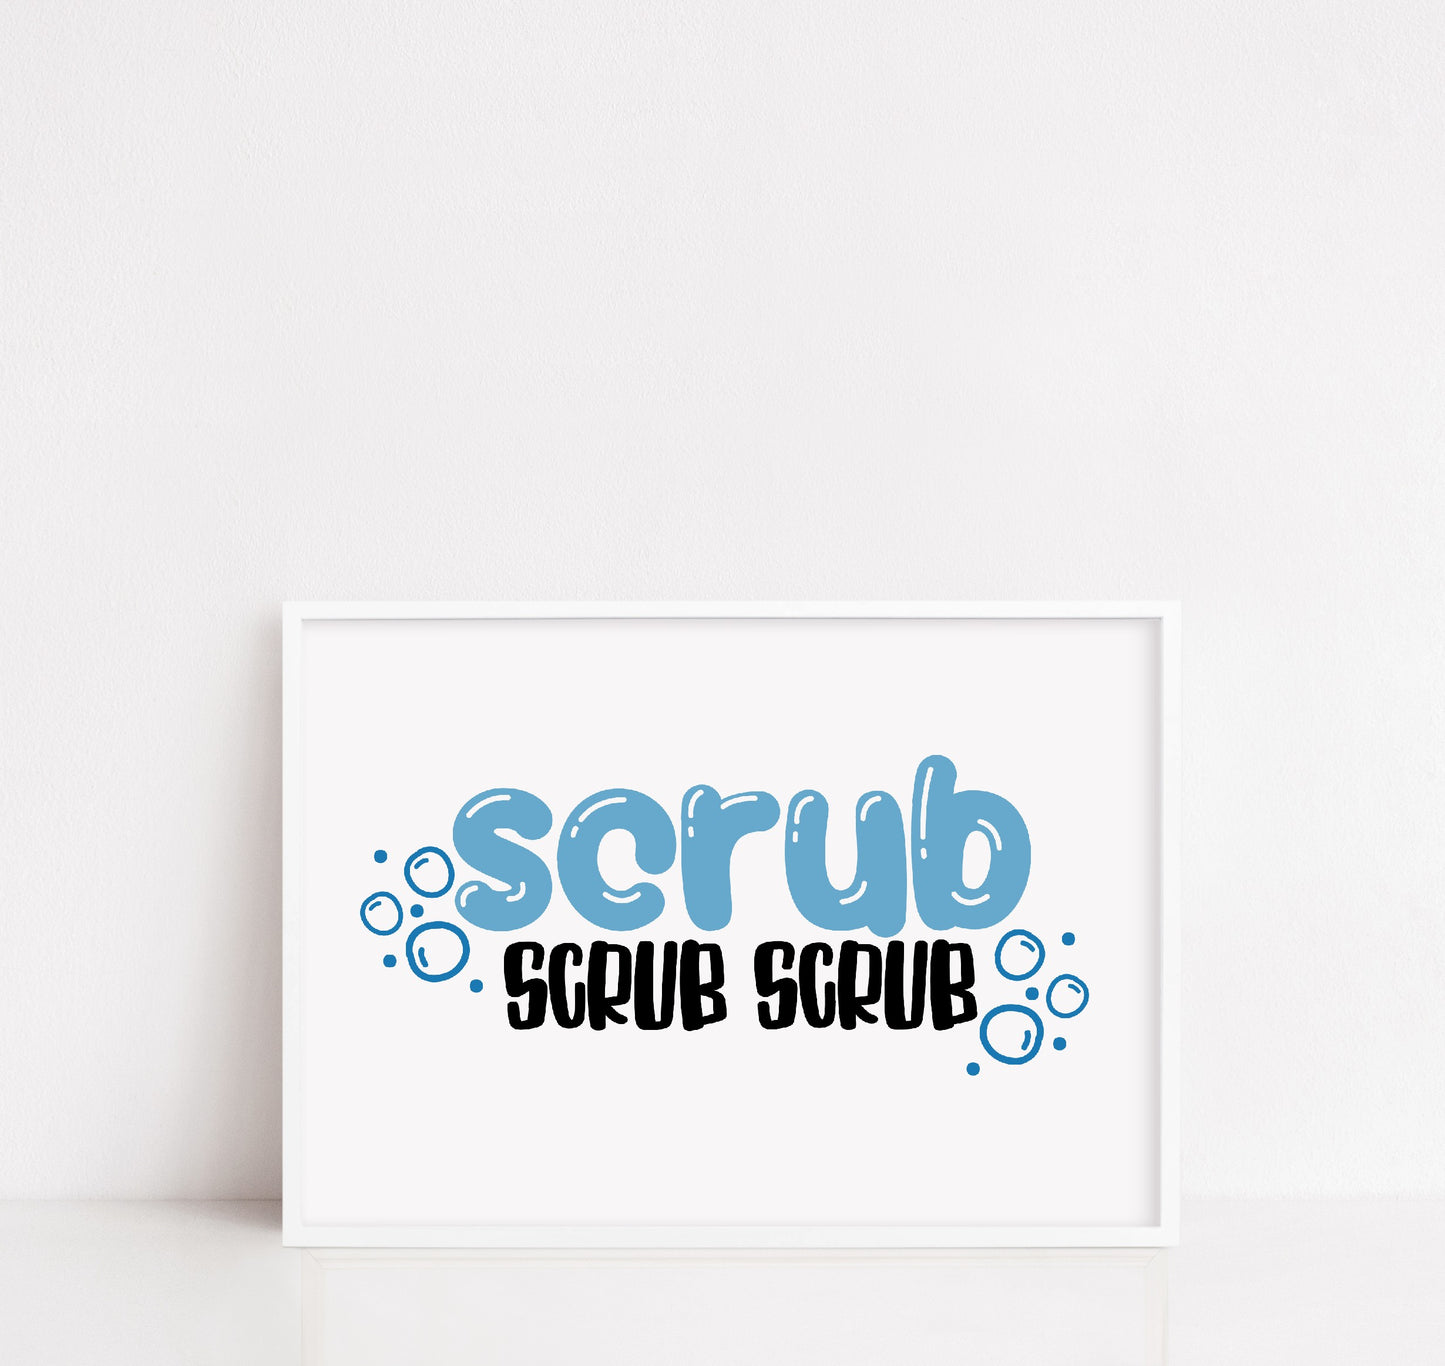 Bathroom Print | Scrub Scrub Scrub | Quote Print